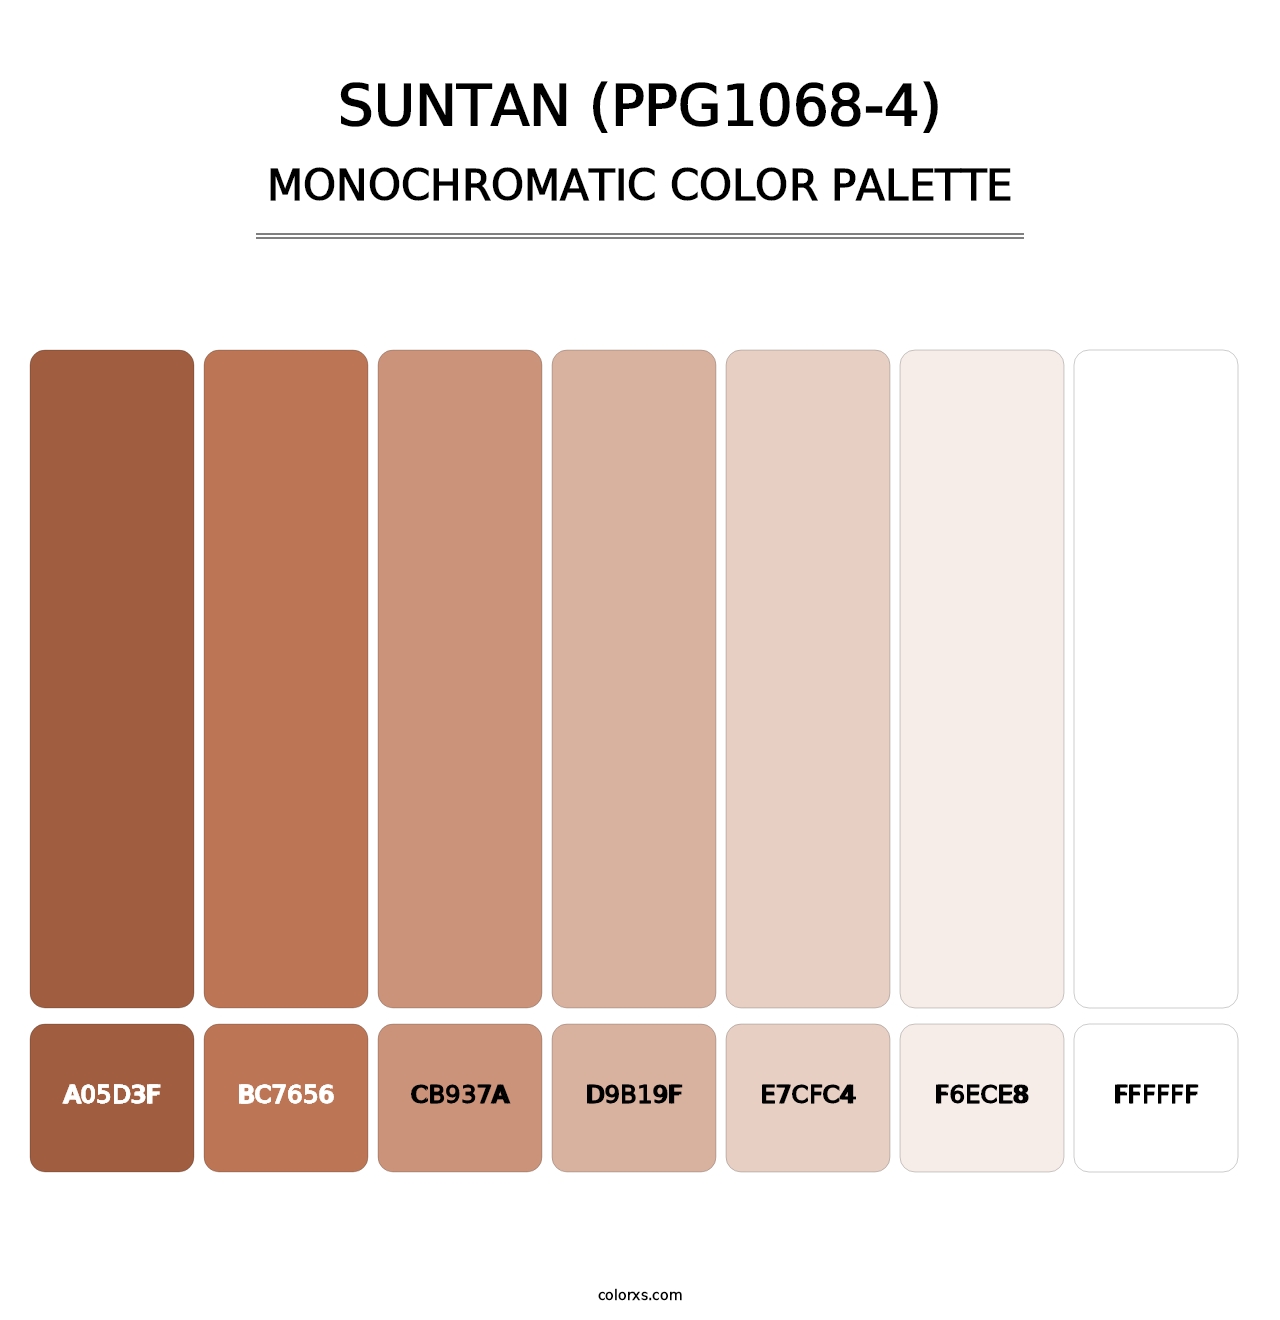 Suntan (PPG1068-4) - Monochromatic Color Palette